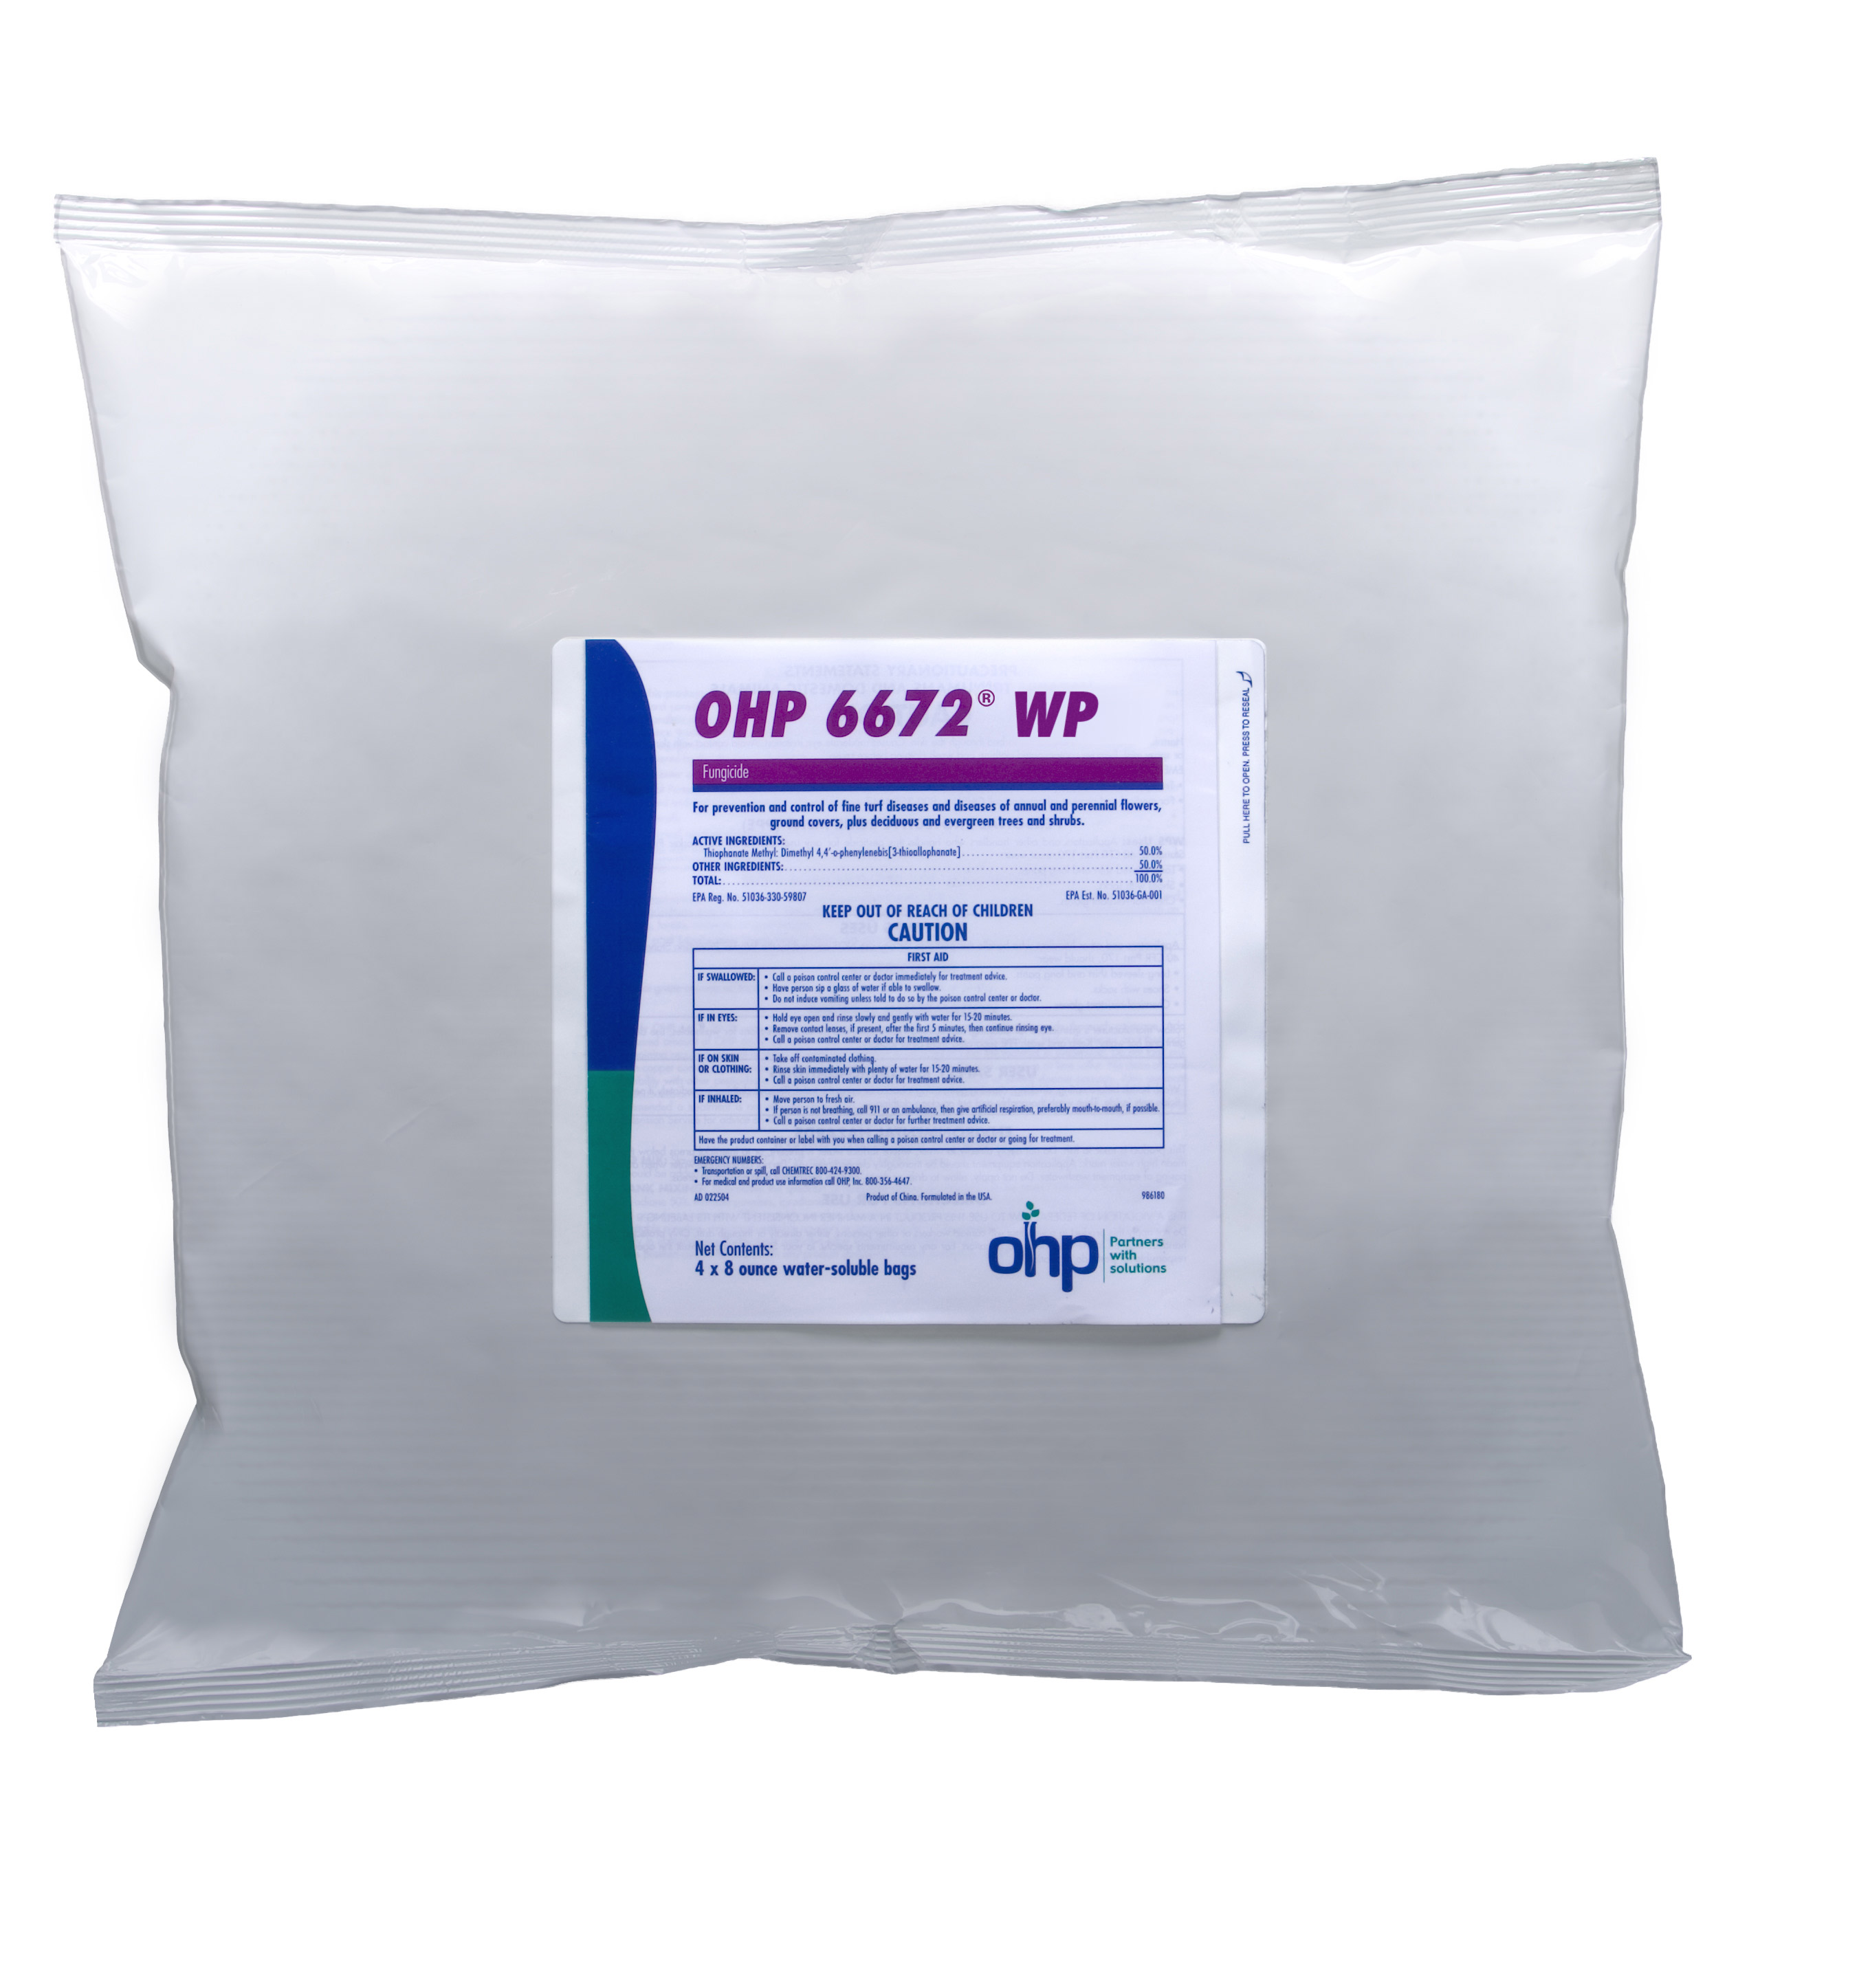 OHP 6672 50 WP (4-8 oz) 2 lb Bag - 6 per case - Fungicides